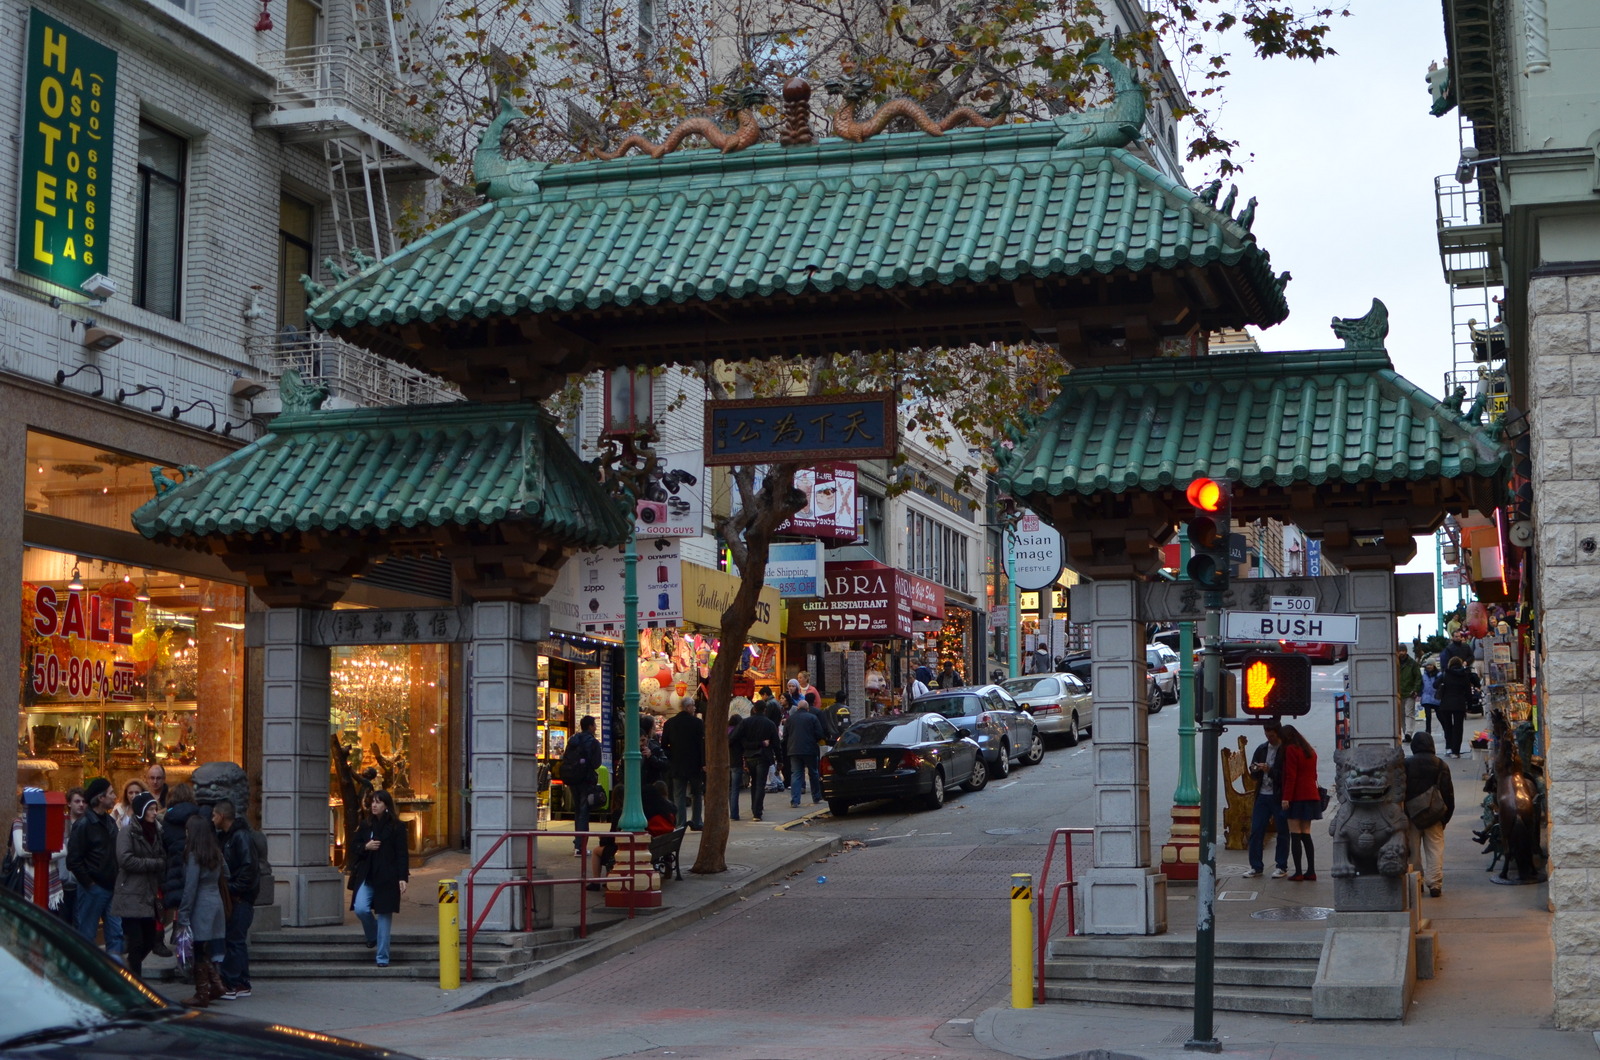 Vibrant Chinatown enclave.